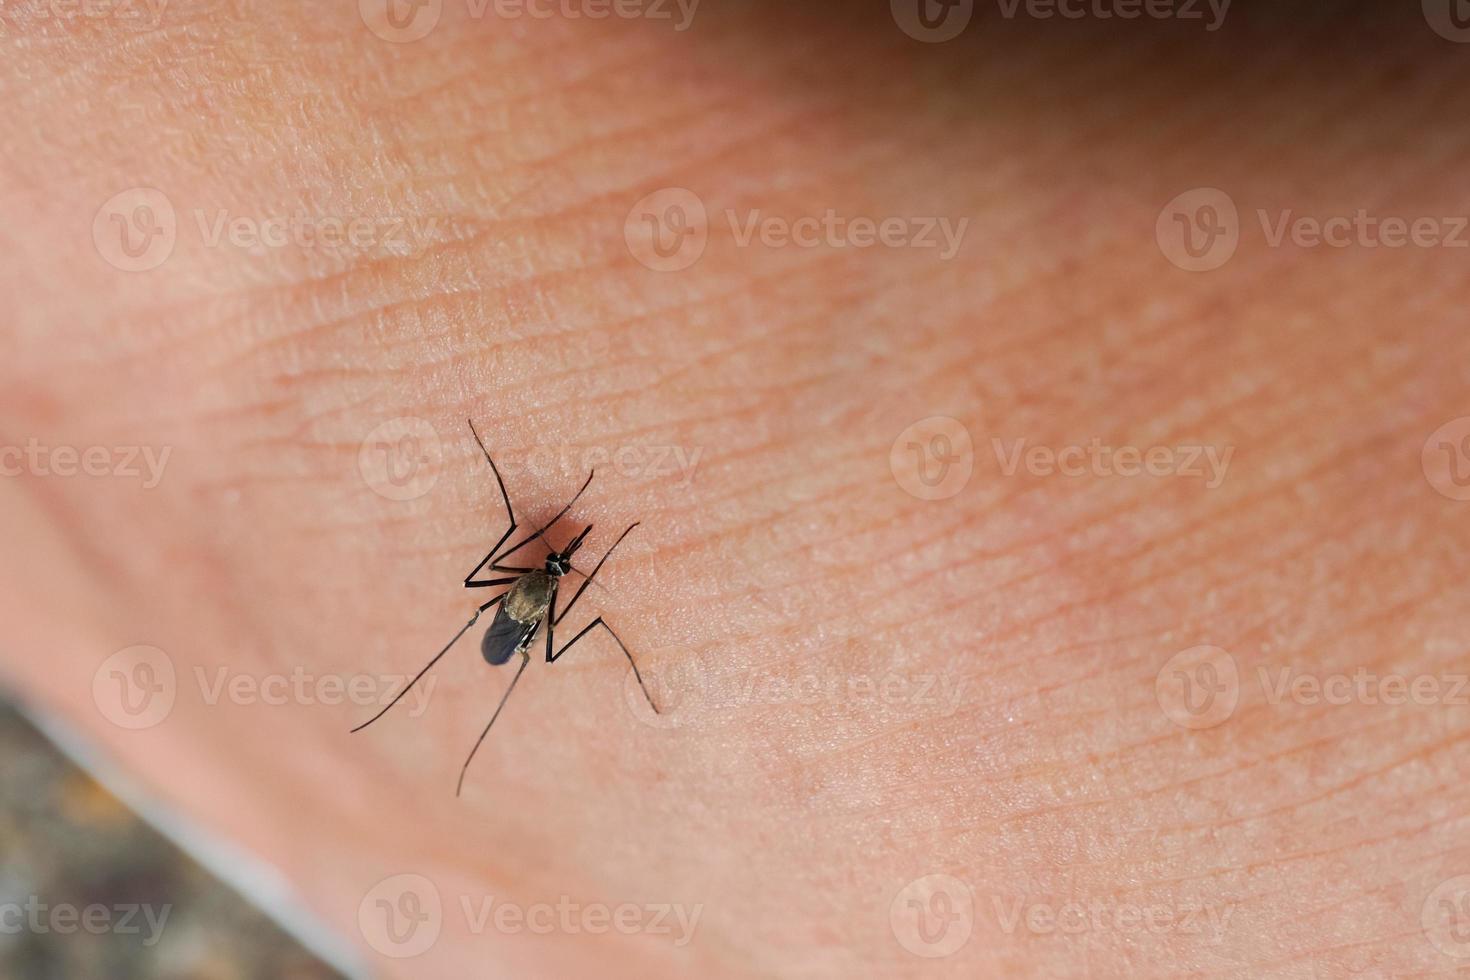 farlig malaria smittad med mygga biter leishmaniasis, encefalit, gul feber, denguefeber, malaria, mayaro eller Zika virus smittad med culex myggor, parasiter, insekter. foto